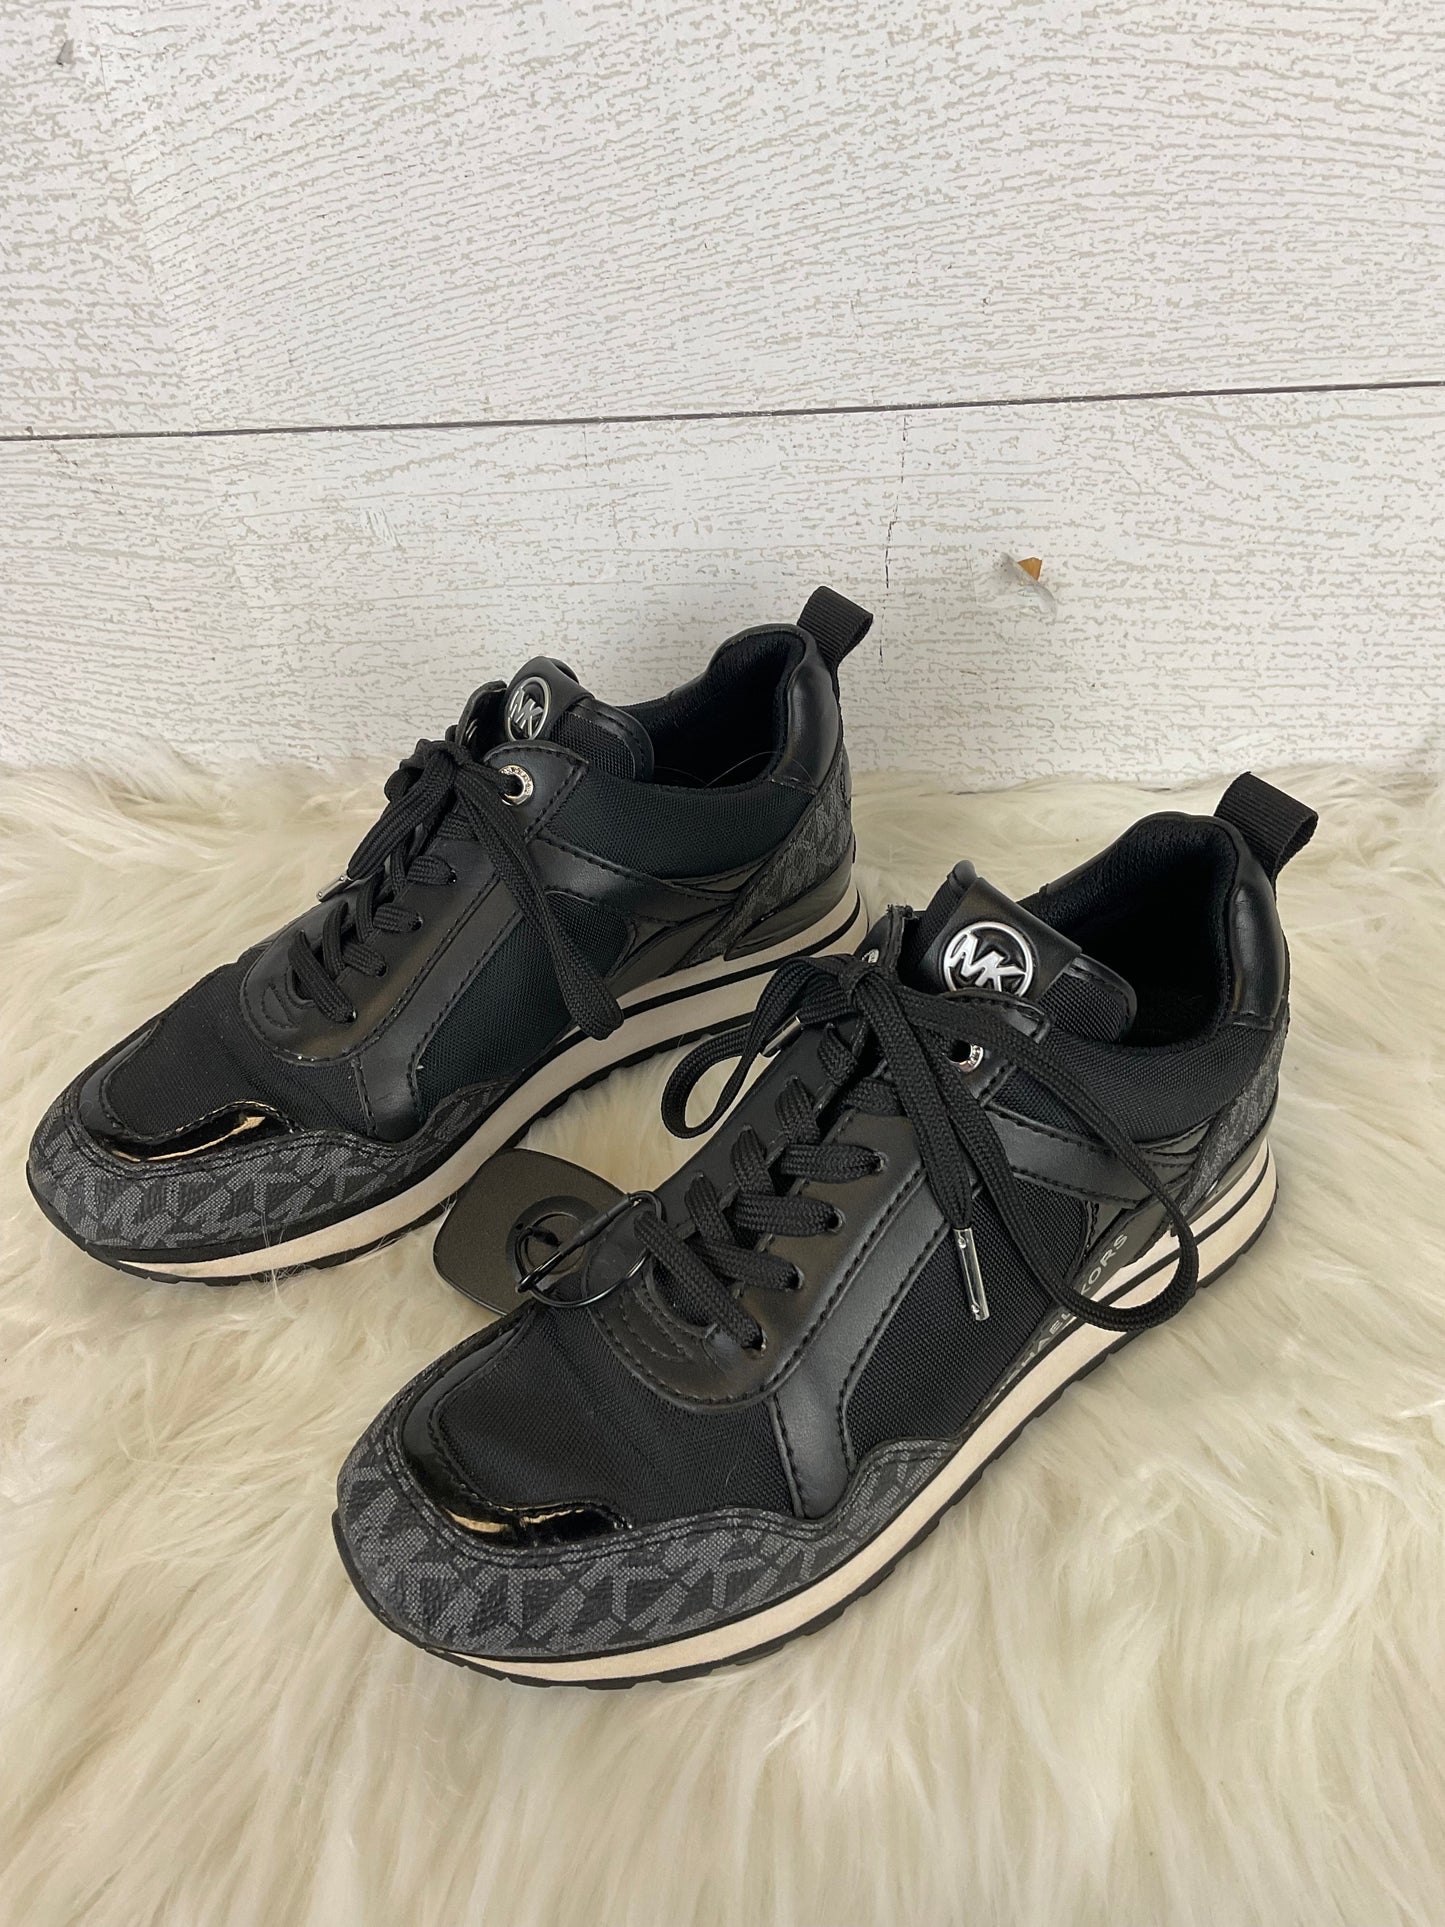 Black Shoes Designer Michael By Michael Kors, Size 6